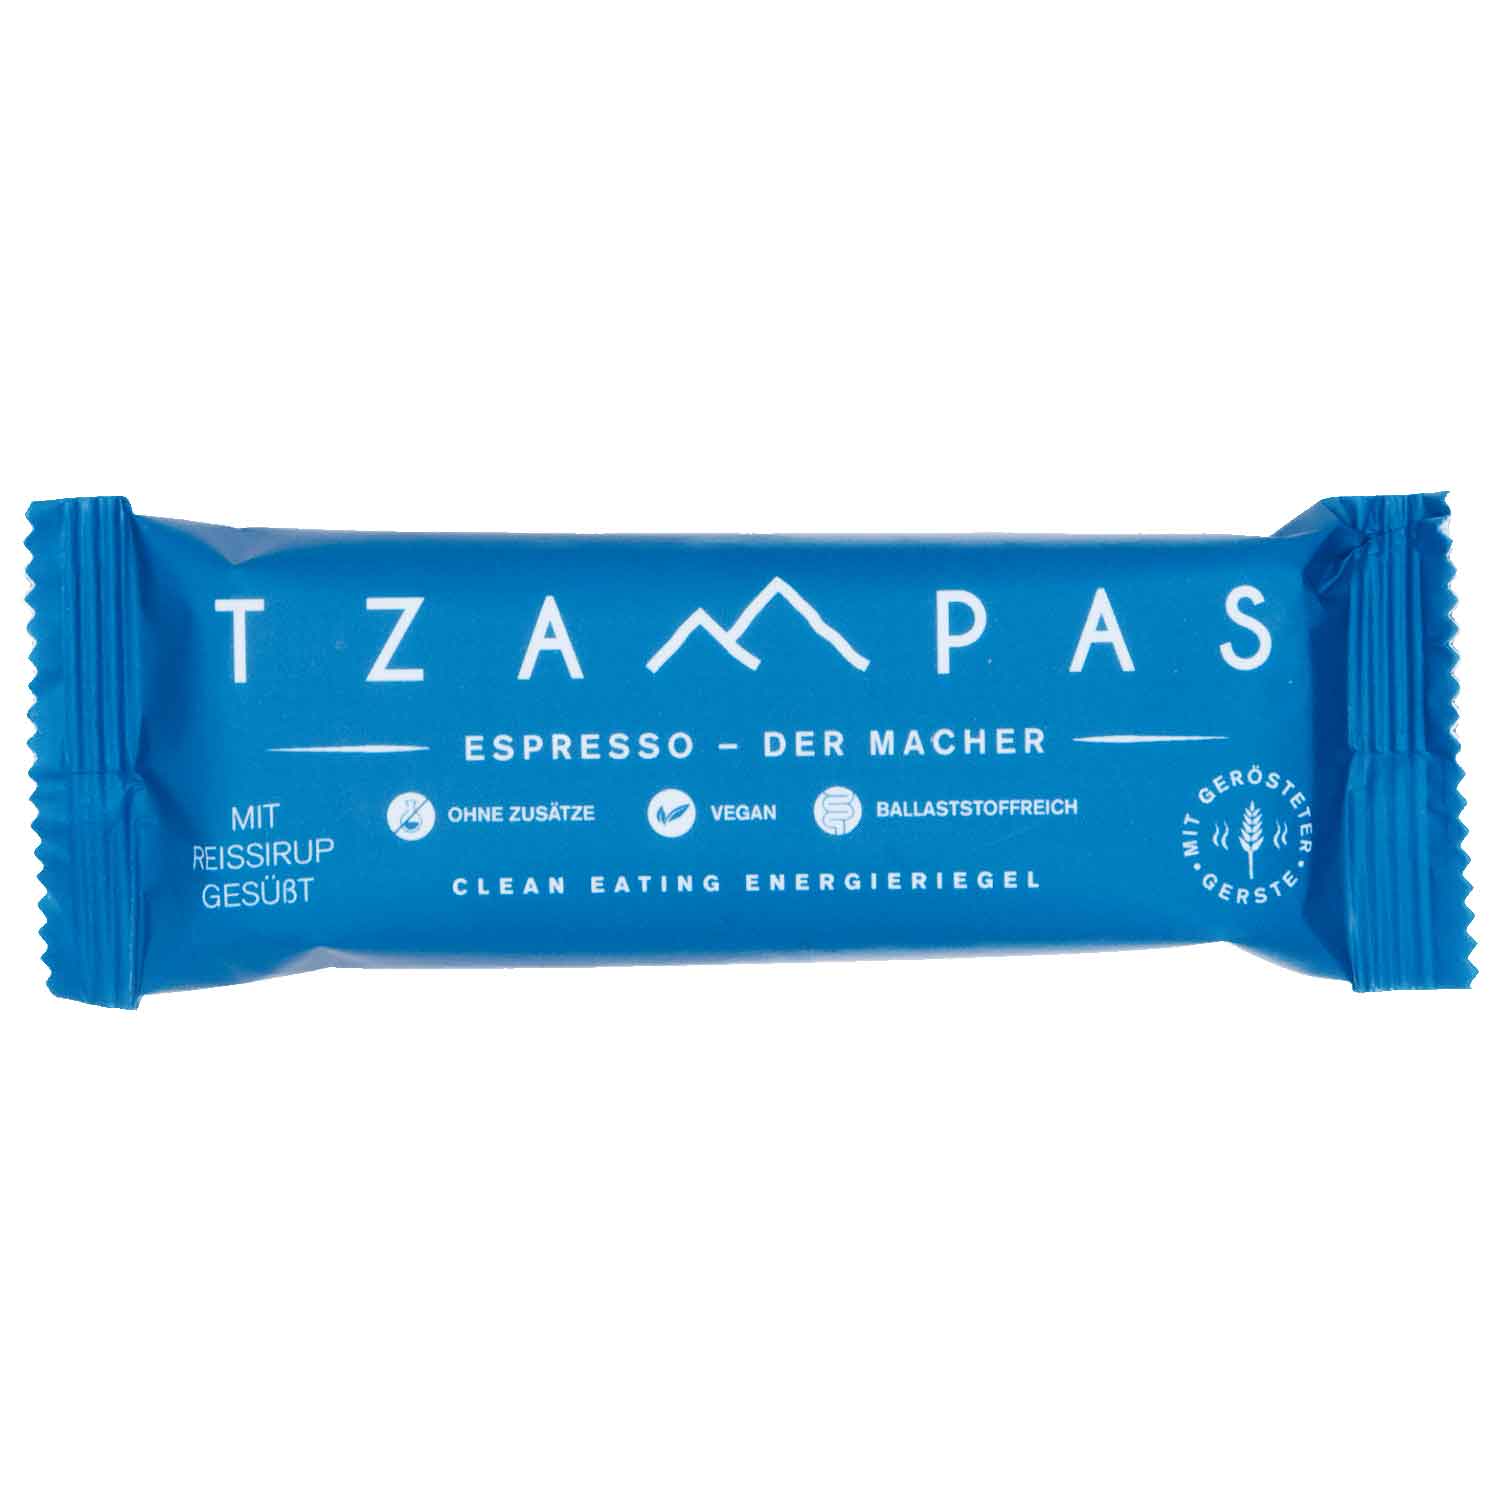 Productfoto van TZAMPAS BIO Espresso - Energiereep - 40g